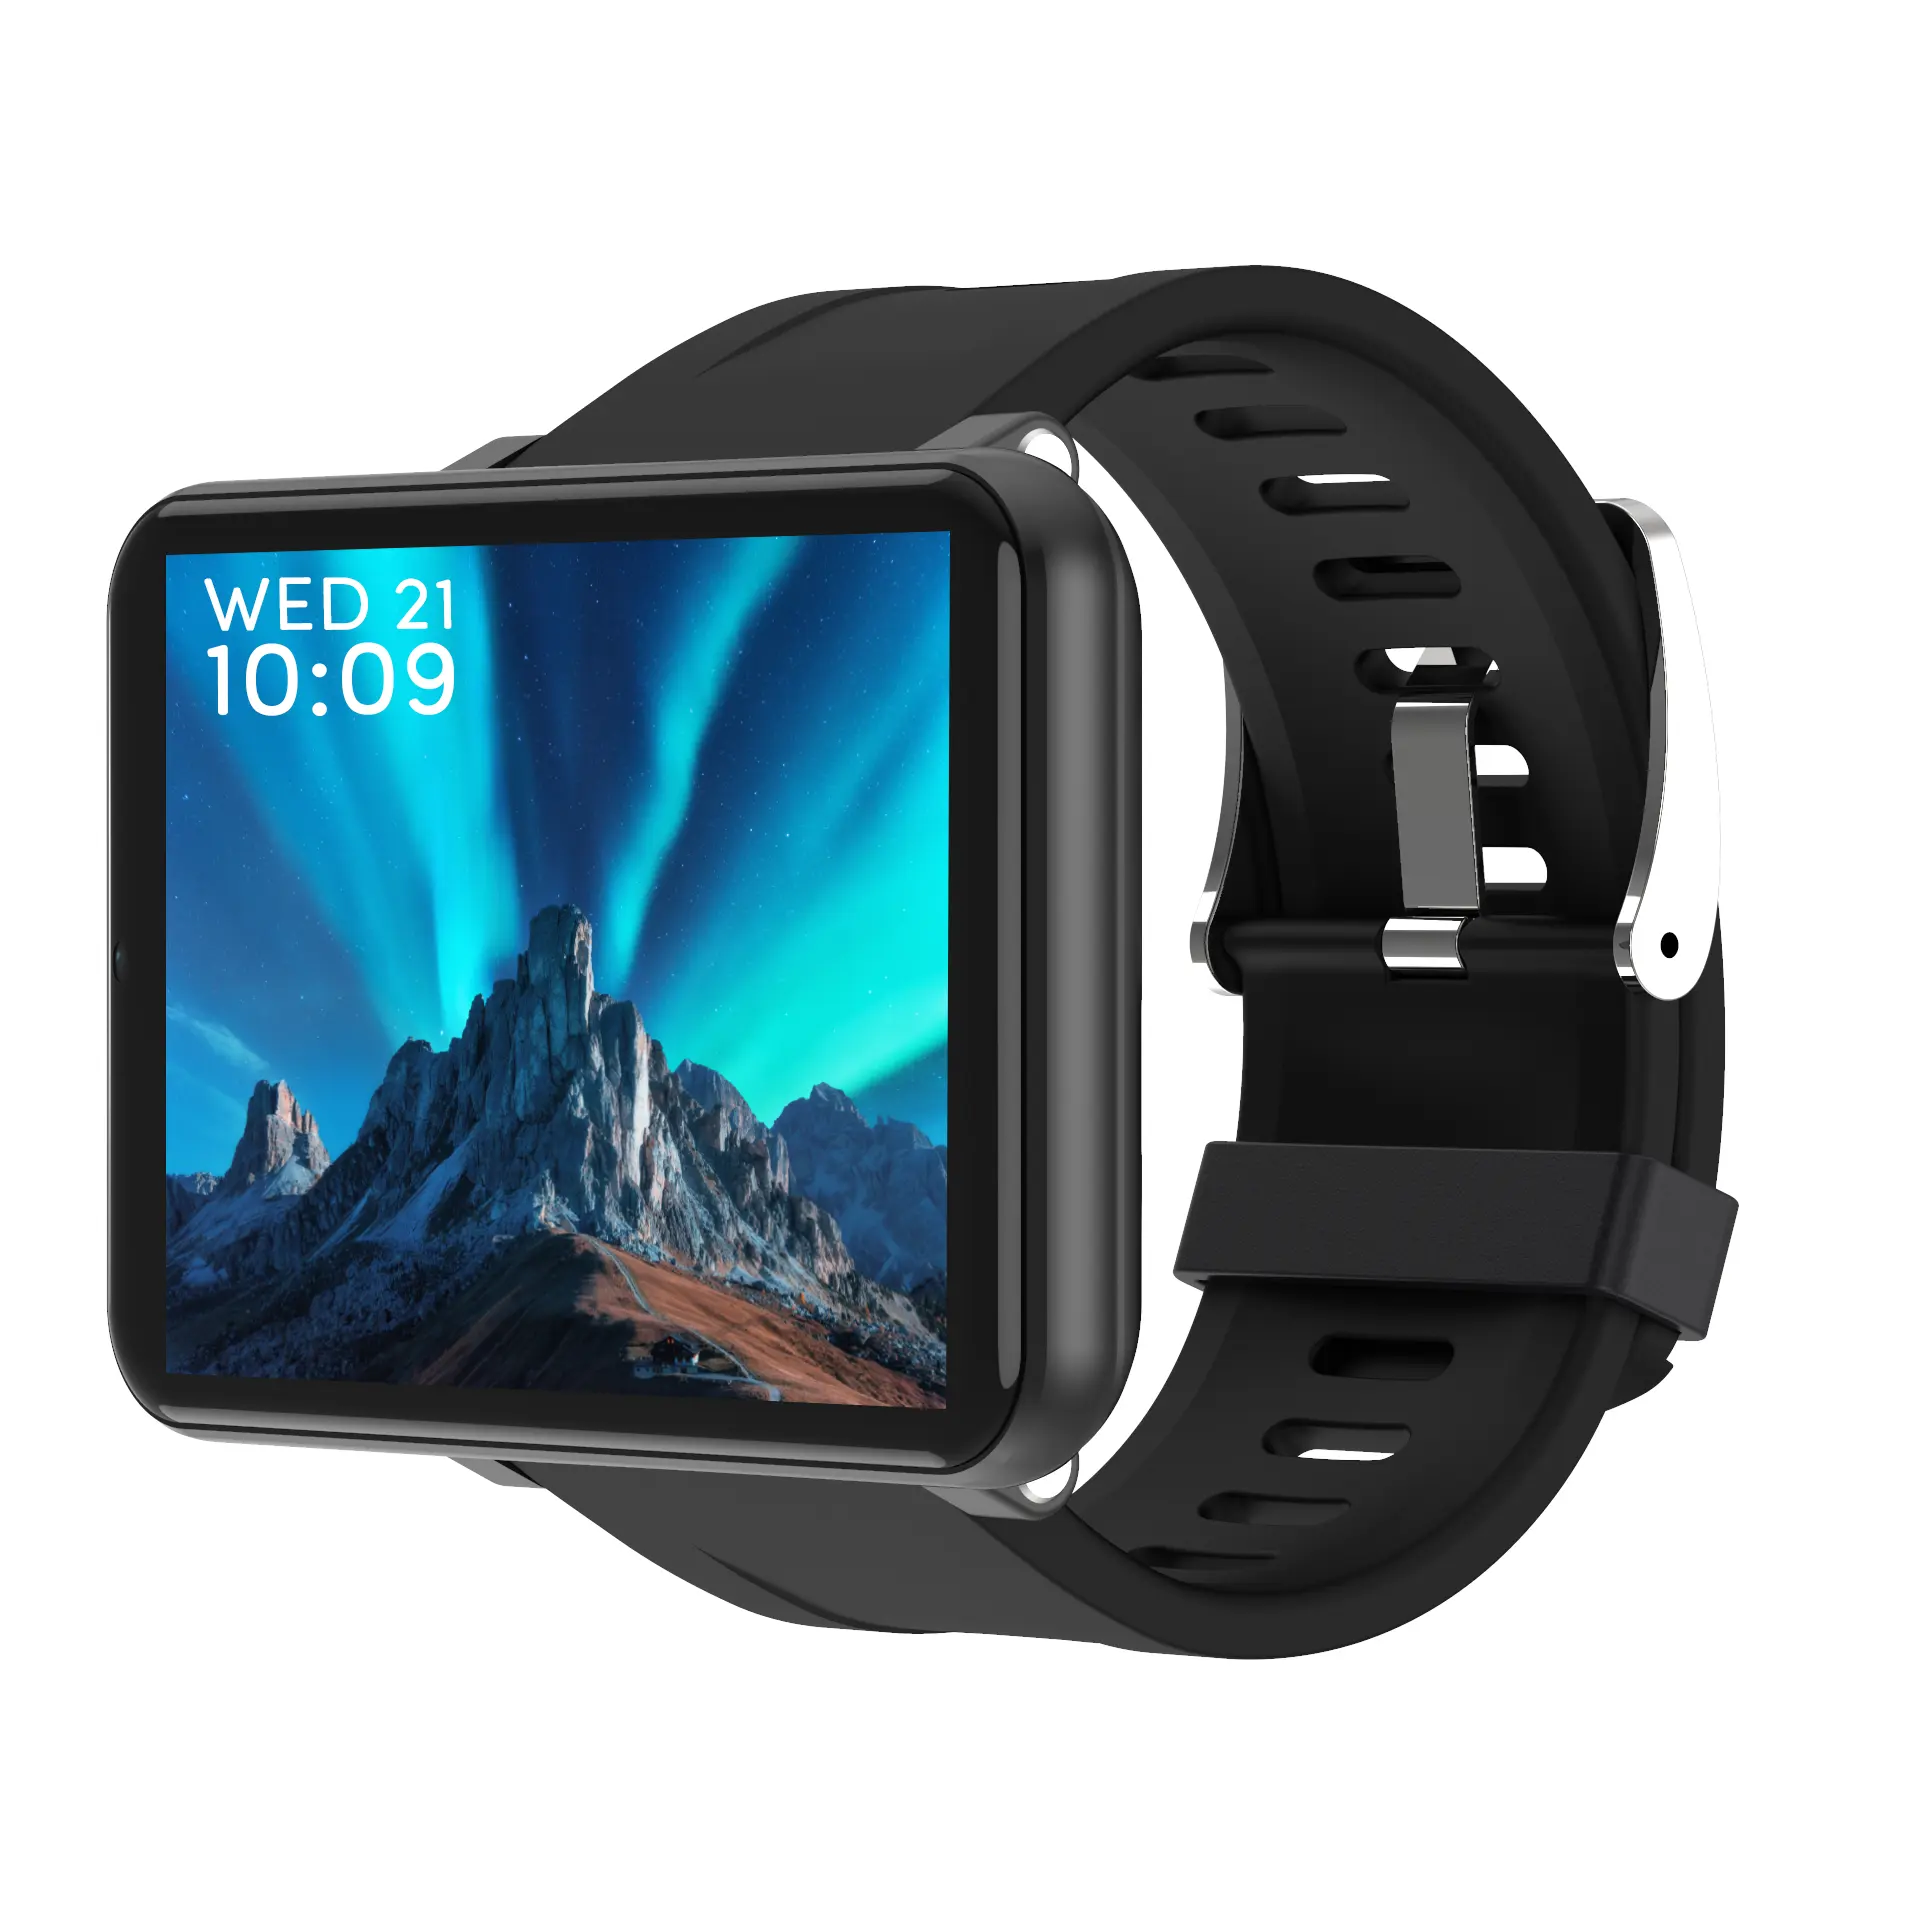 2020 vente chaude montre intelligente DM100 smartwatch avec caméra oled 4g smartwatch téléphone android